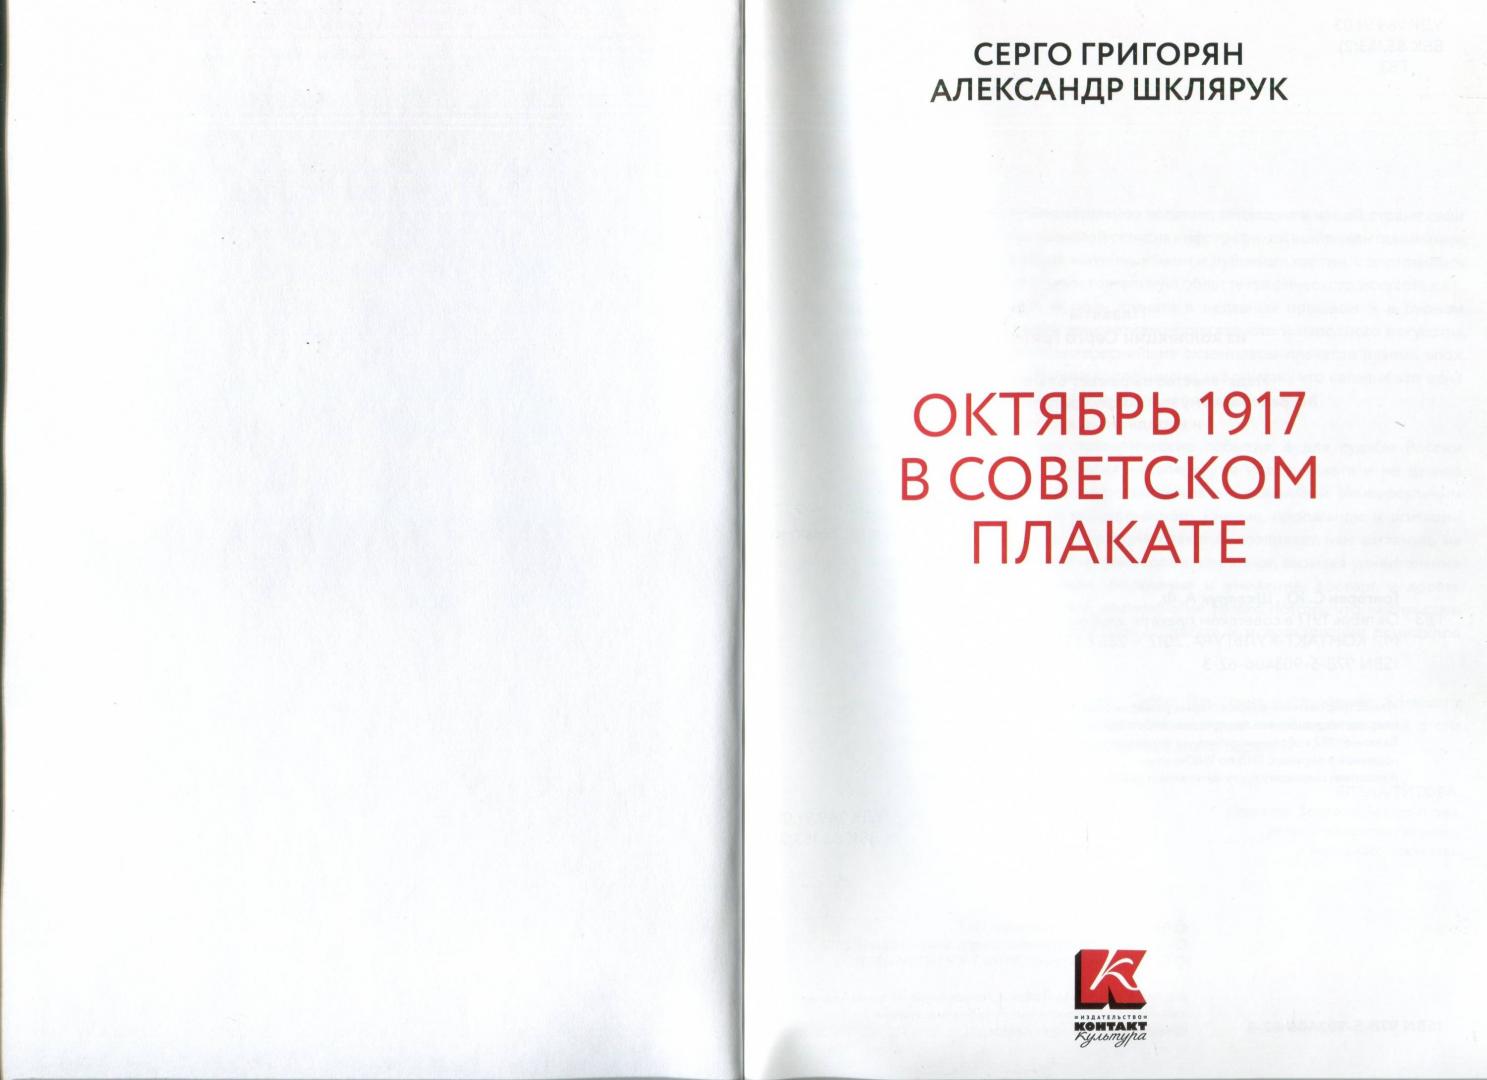 Иллюстрация 23 из 52 для Октябрь 1917 в советском плакате. Альбом - Шклярук, Григорян | Лабиринт - книги. Источник: Лабиринт